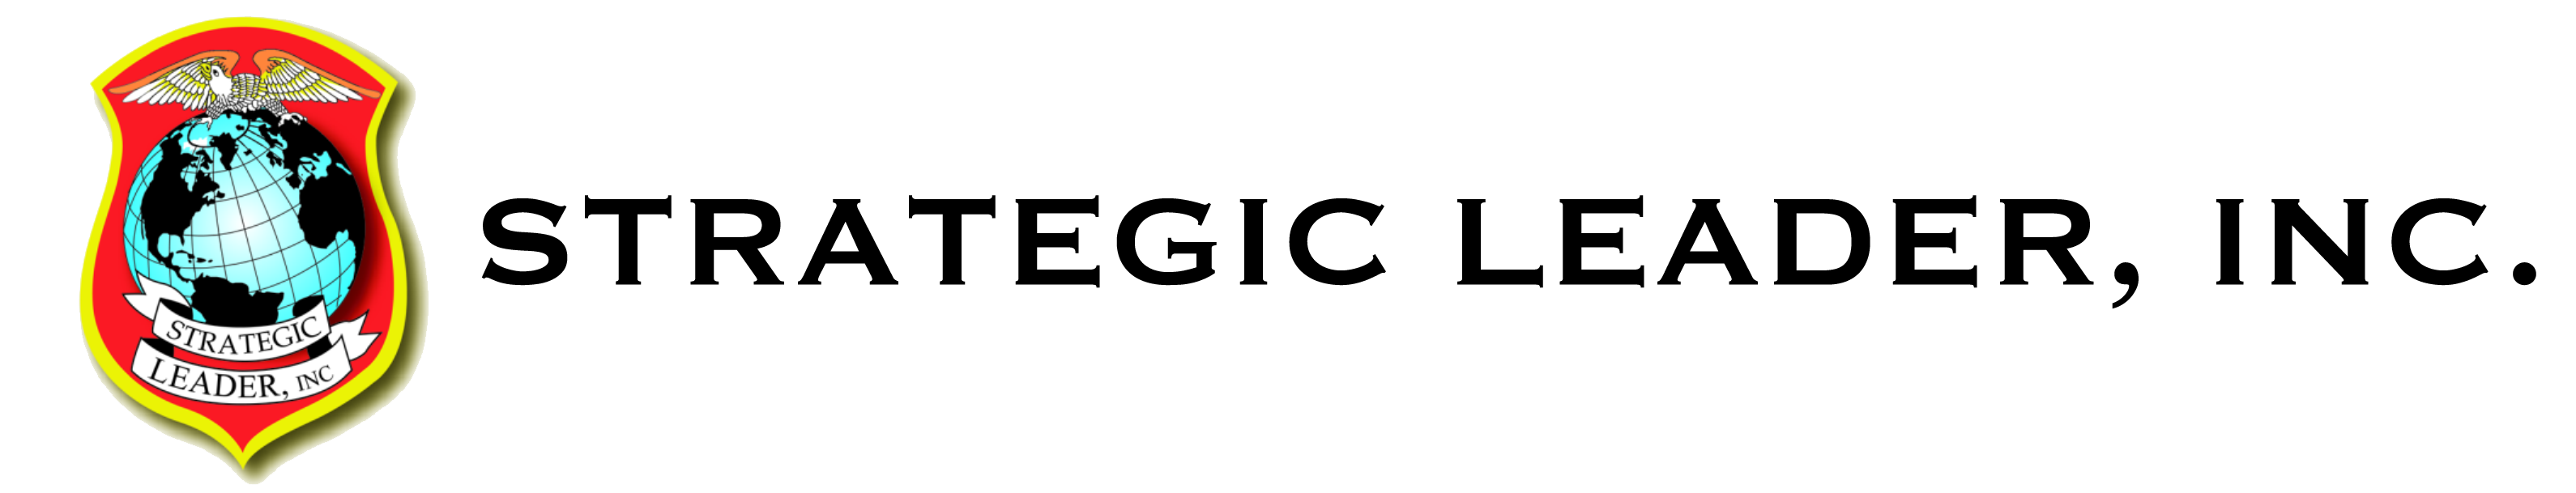 SLI website logo trans